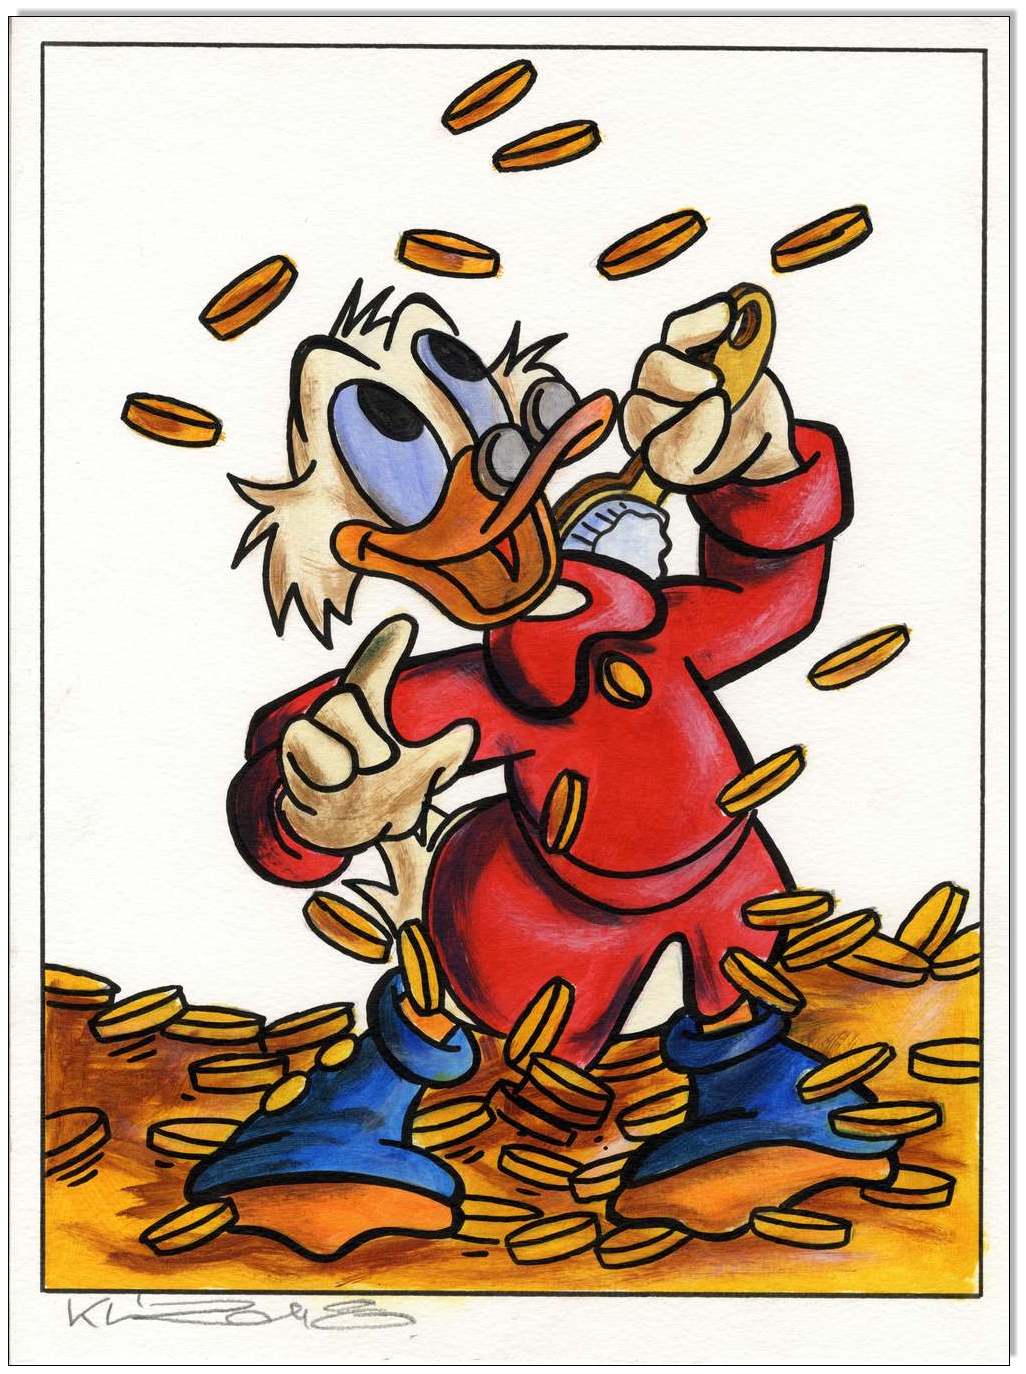 Dagobert Duck: Scrooges Coin shower IV - 30 x 40 cm